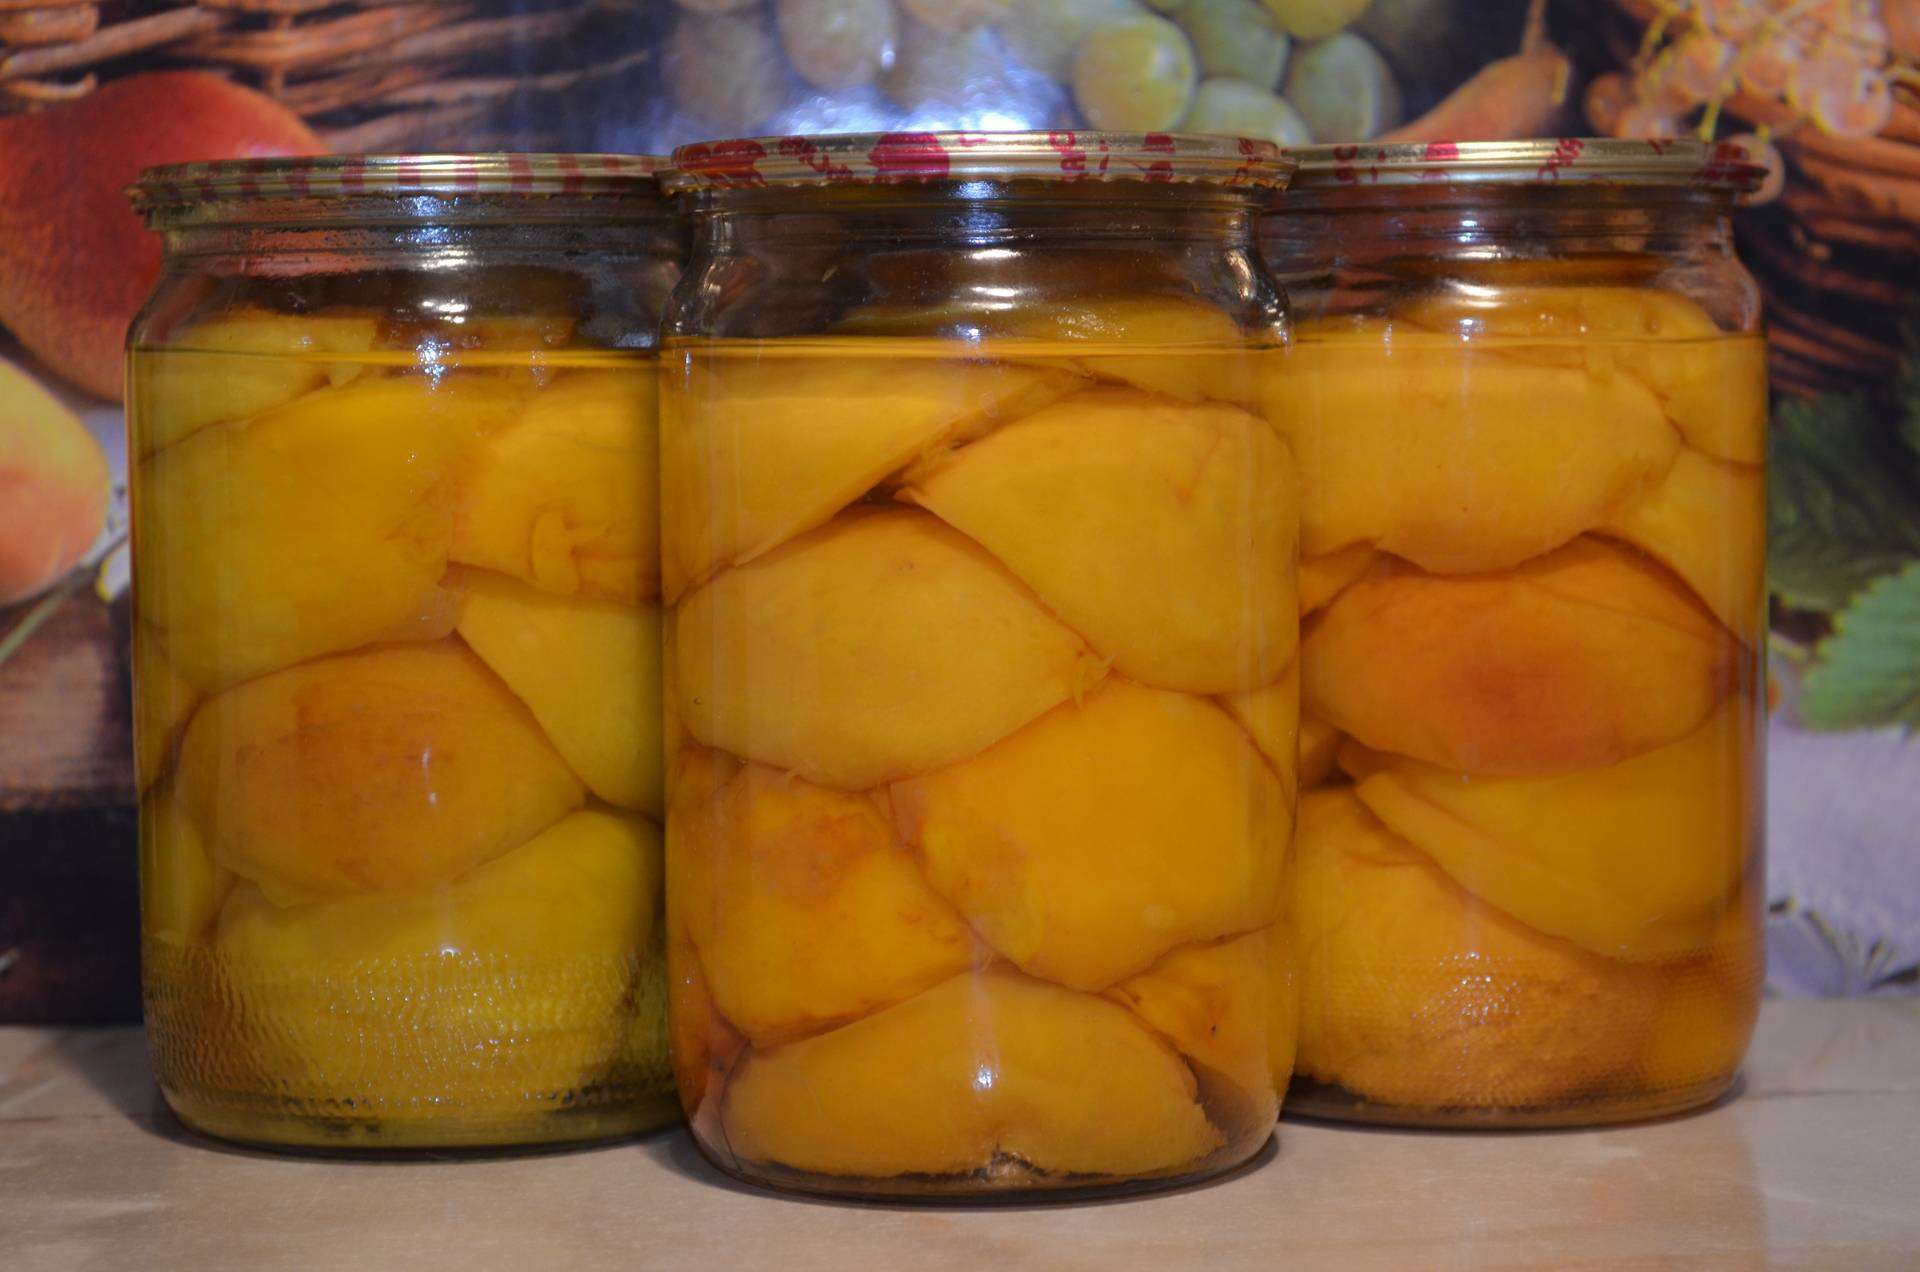 7 лучших рецептов приготовления персиков в сиропе на зиму